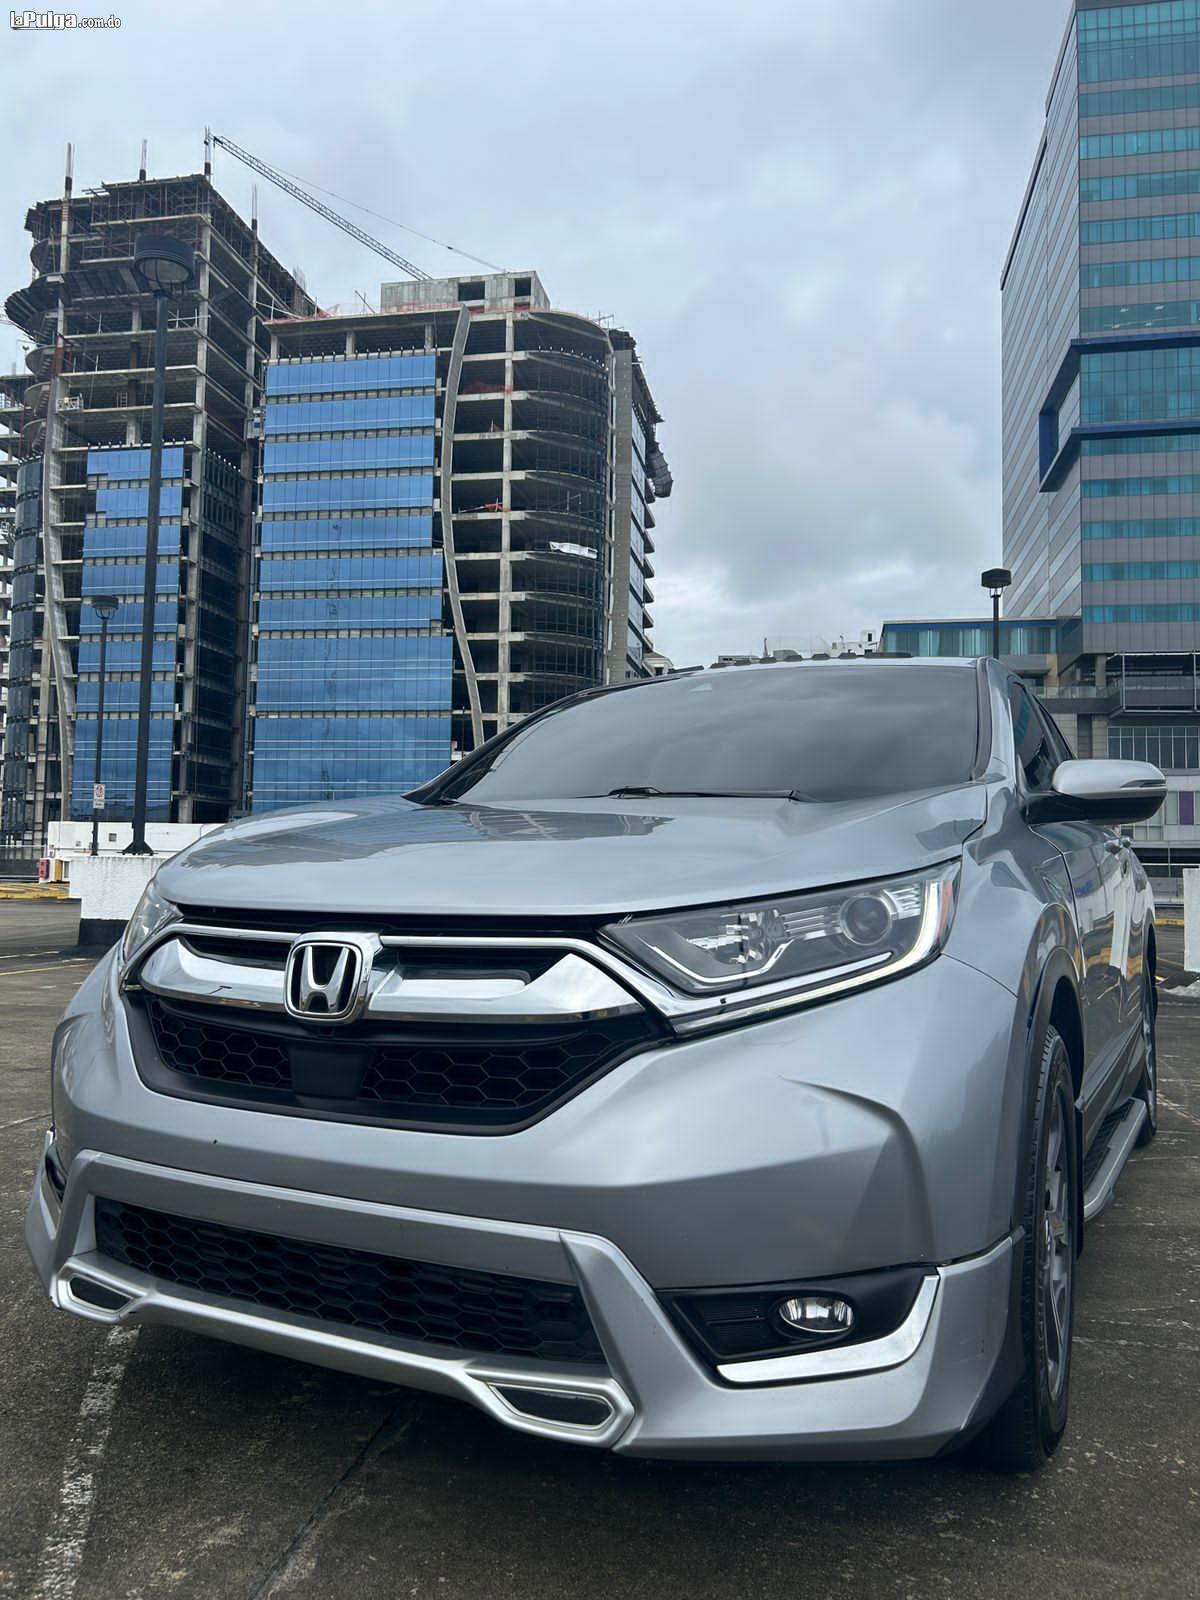 Honda CRV 2018 Gasolina Foto 7161286-1.jpg